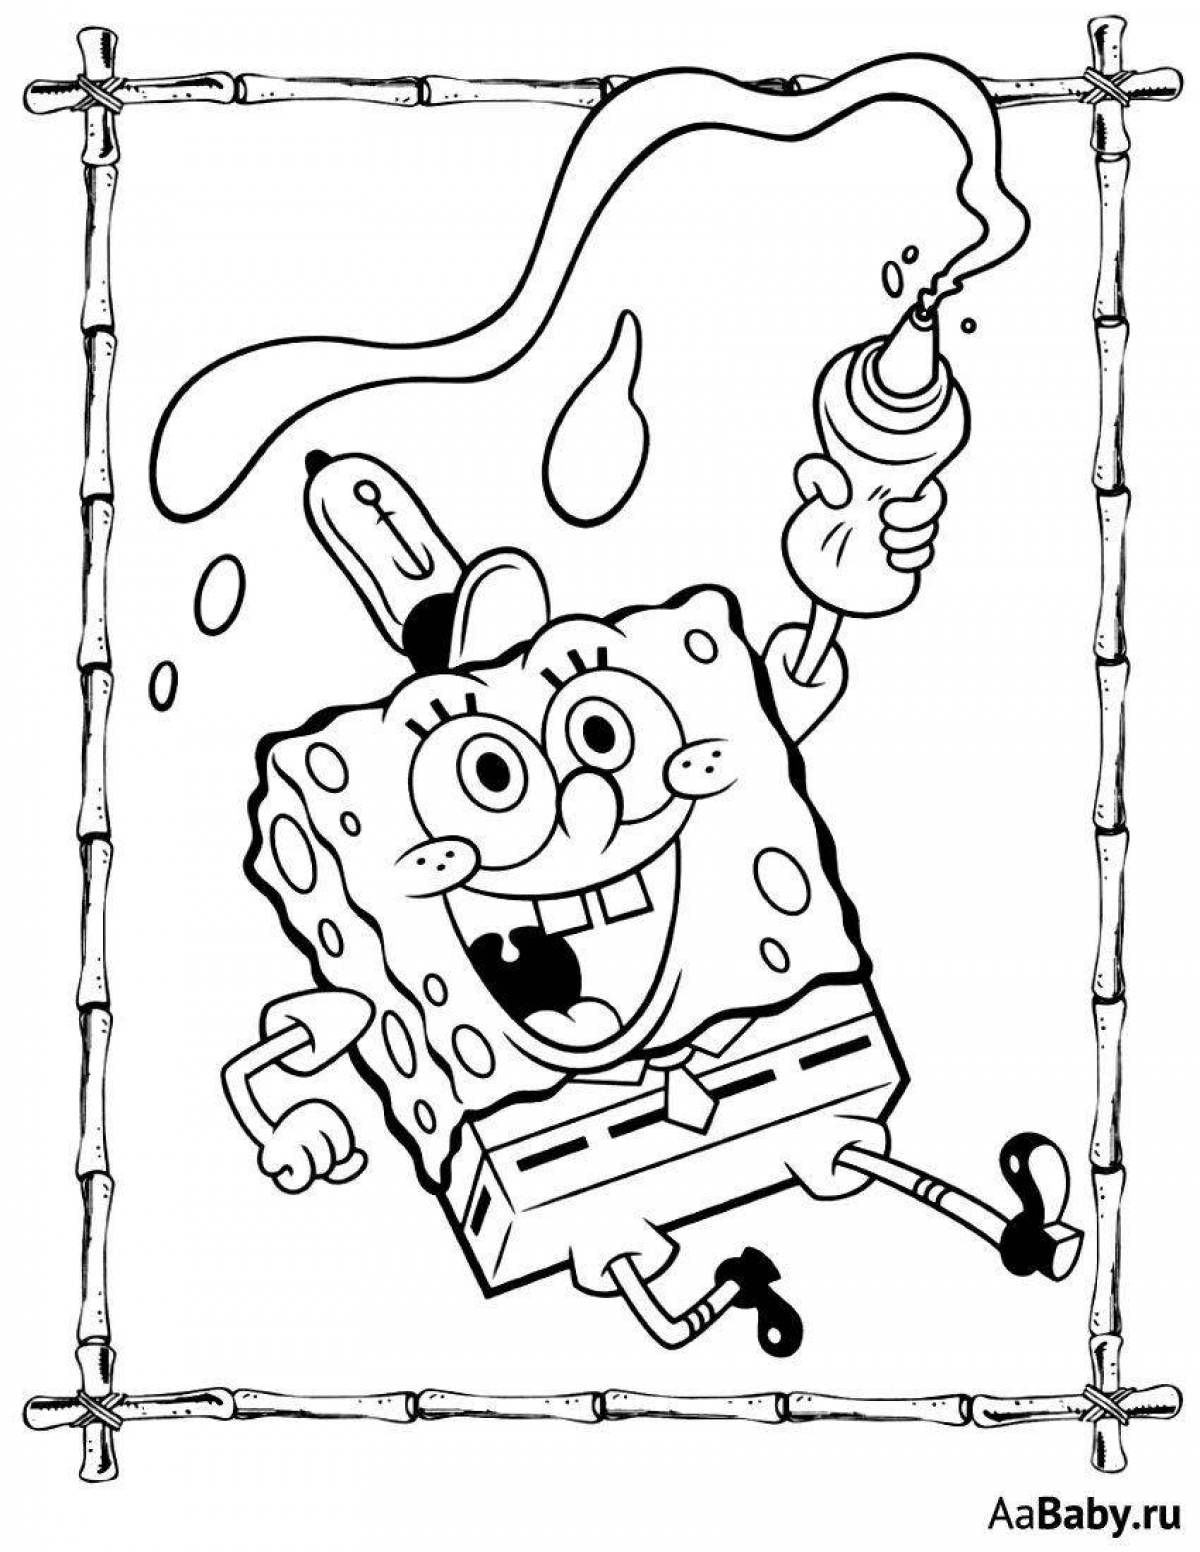 Spongebob by numbers #2